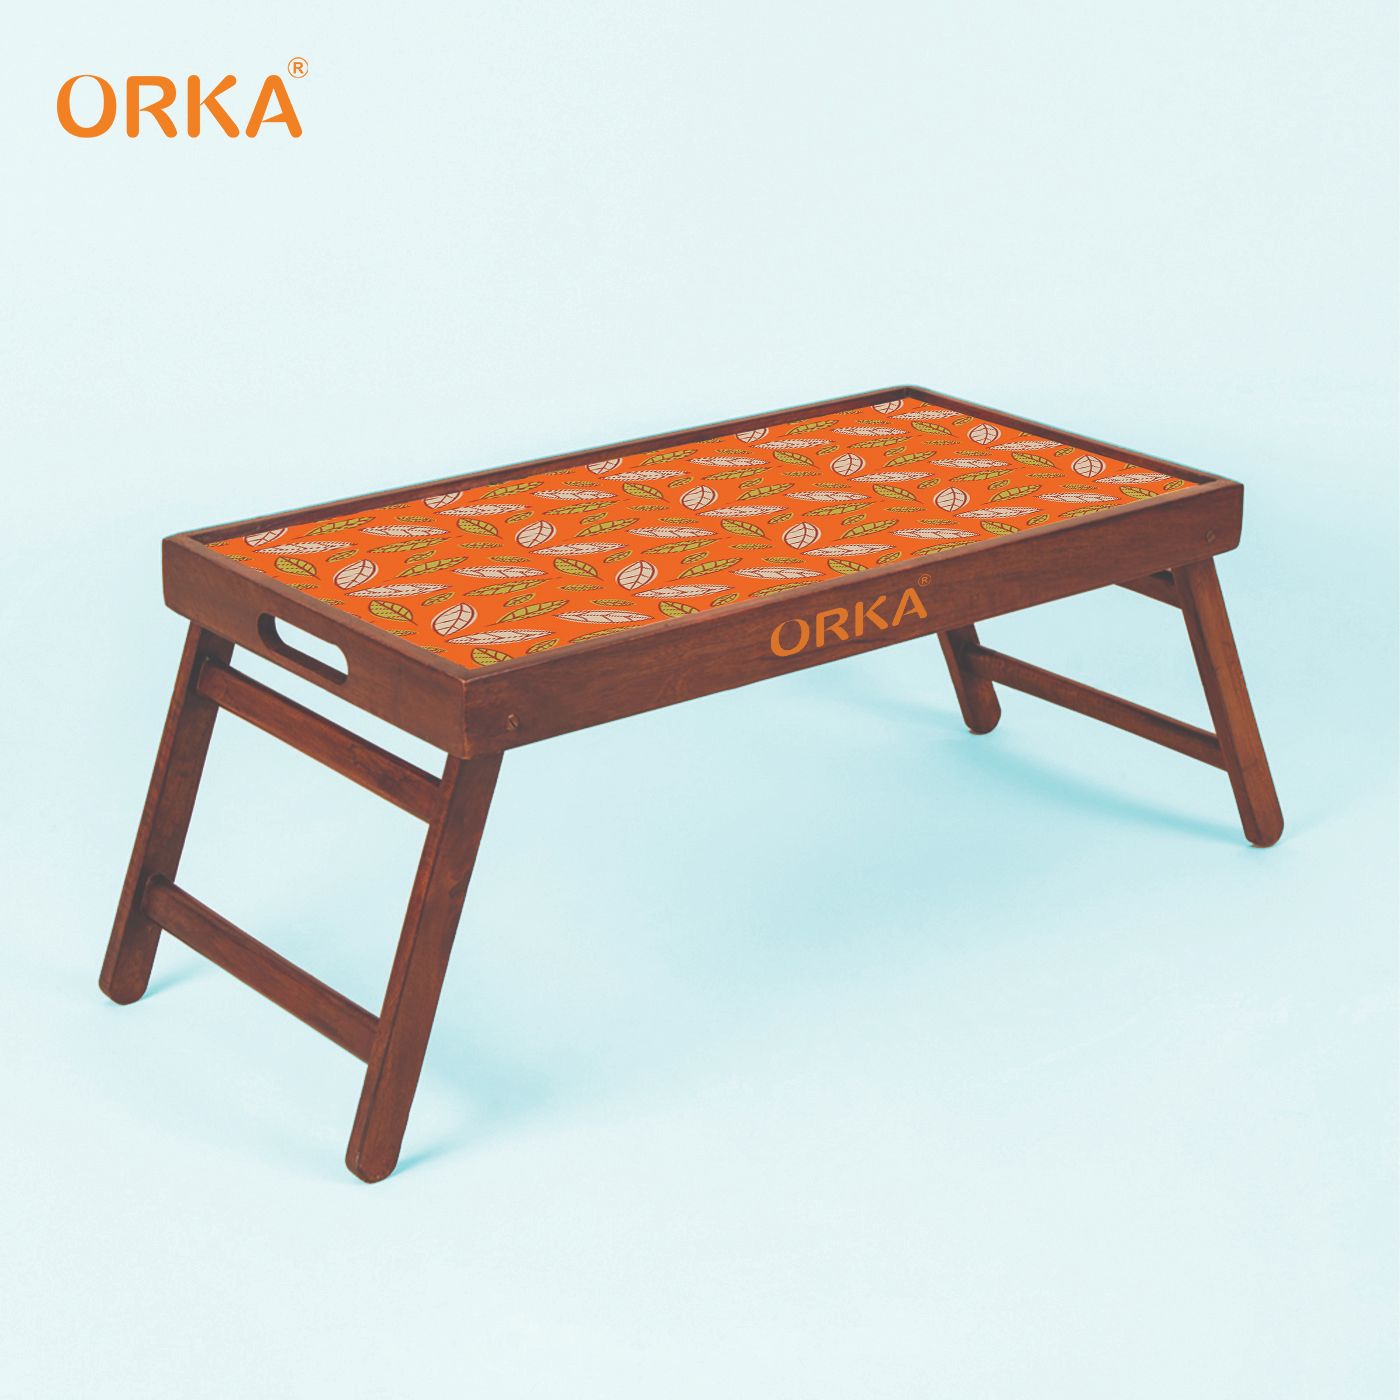 ORKA Foliole Foldable Pine Wood Breakfast Table (Orange)  